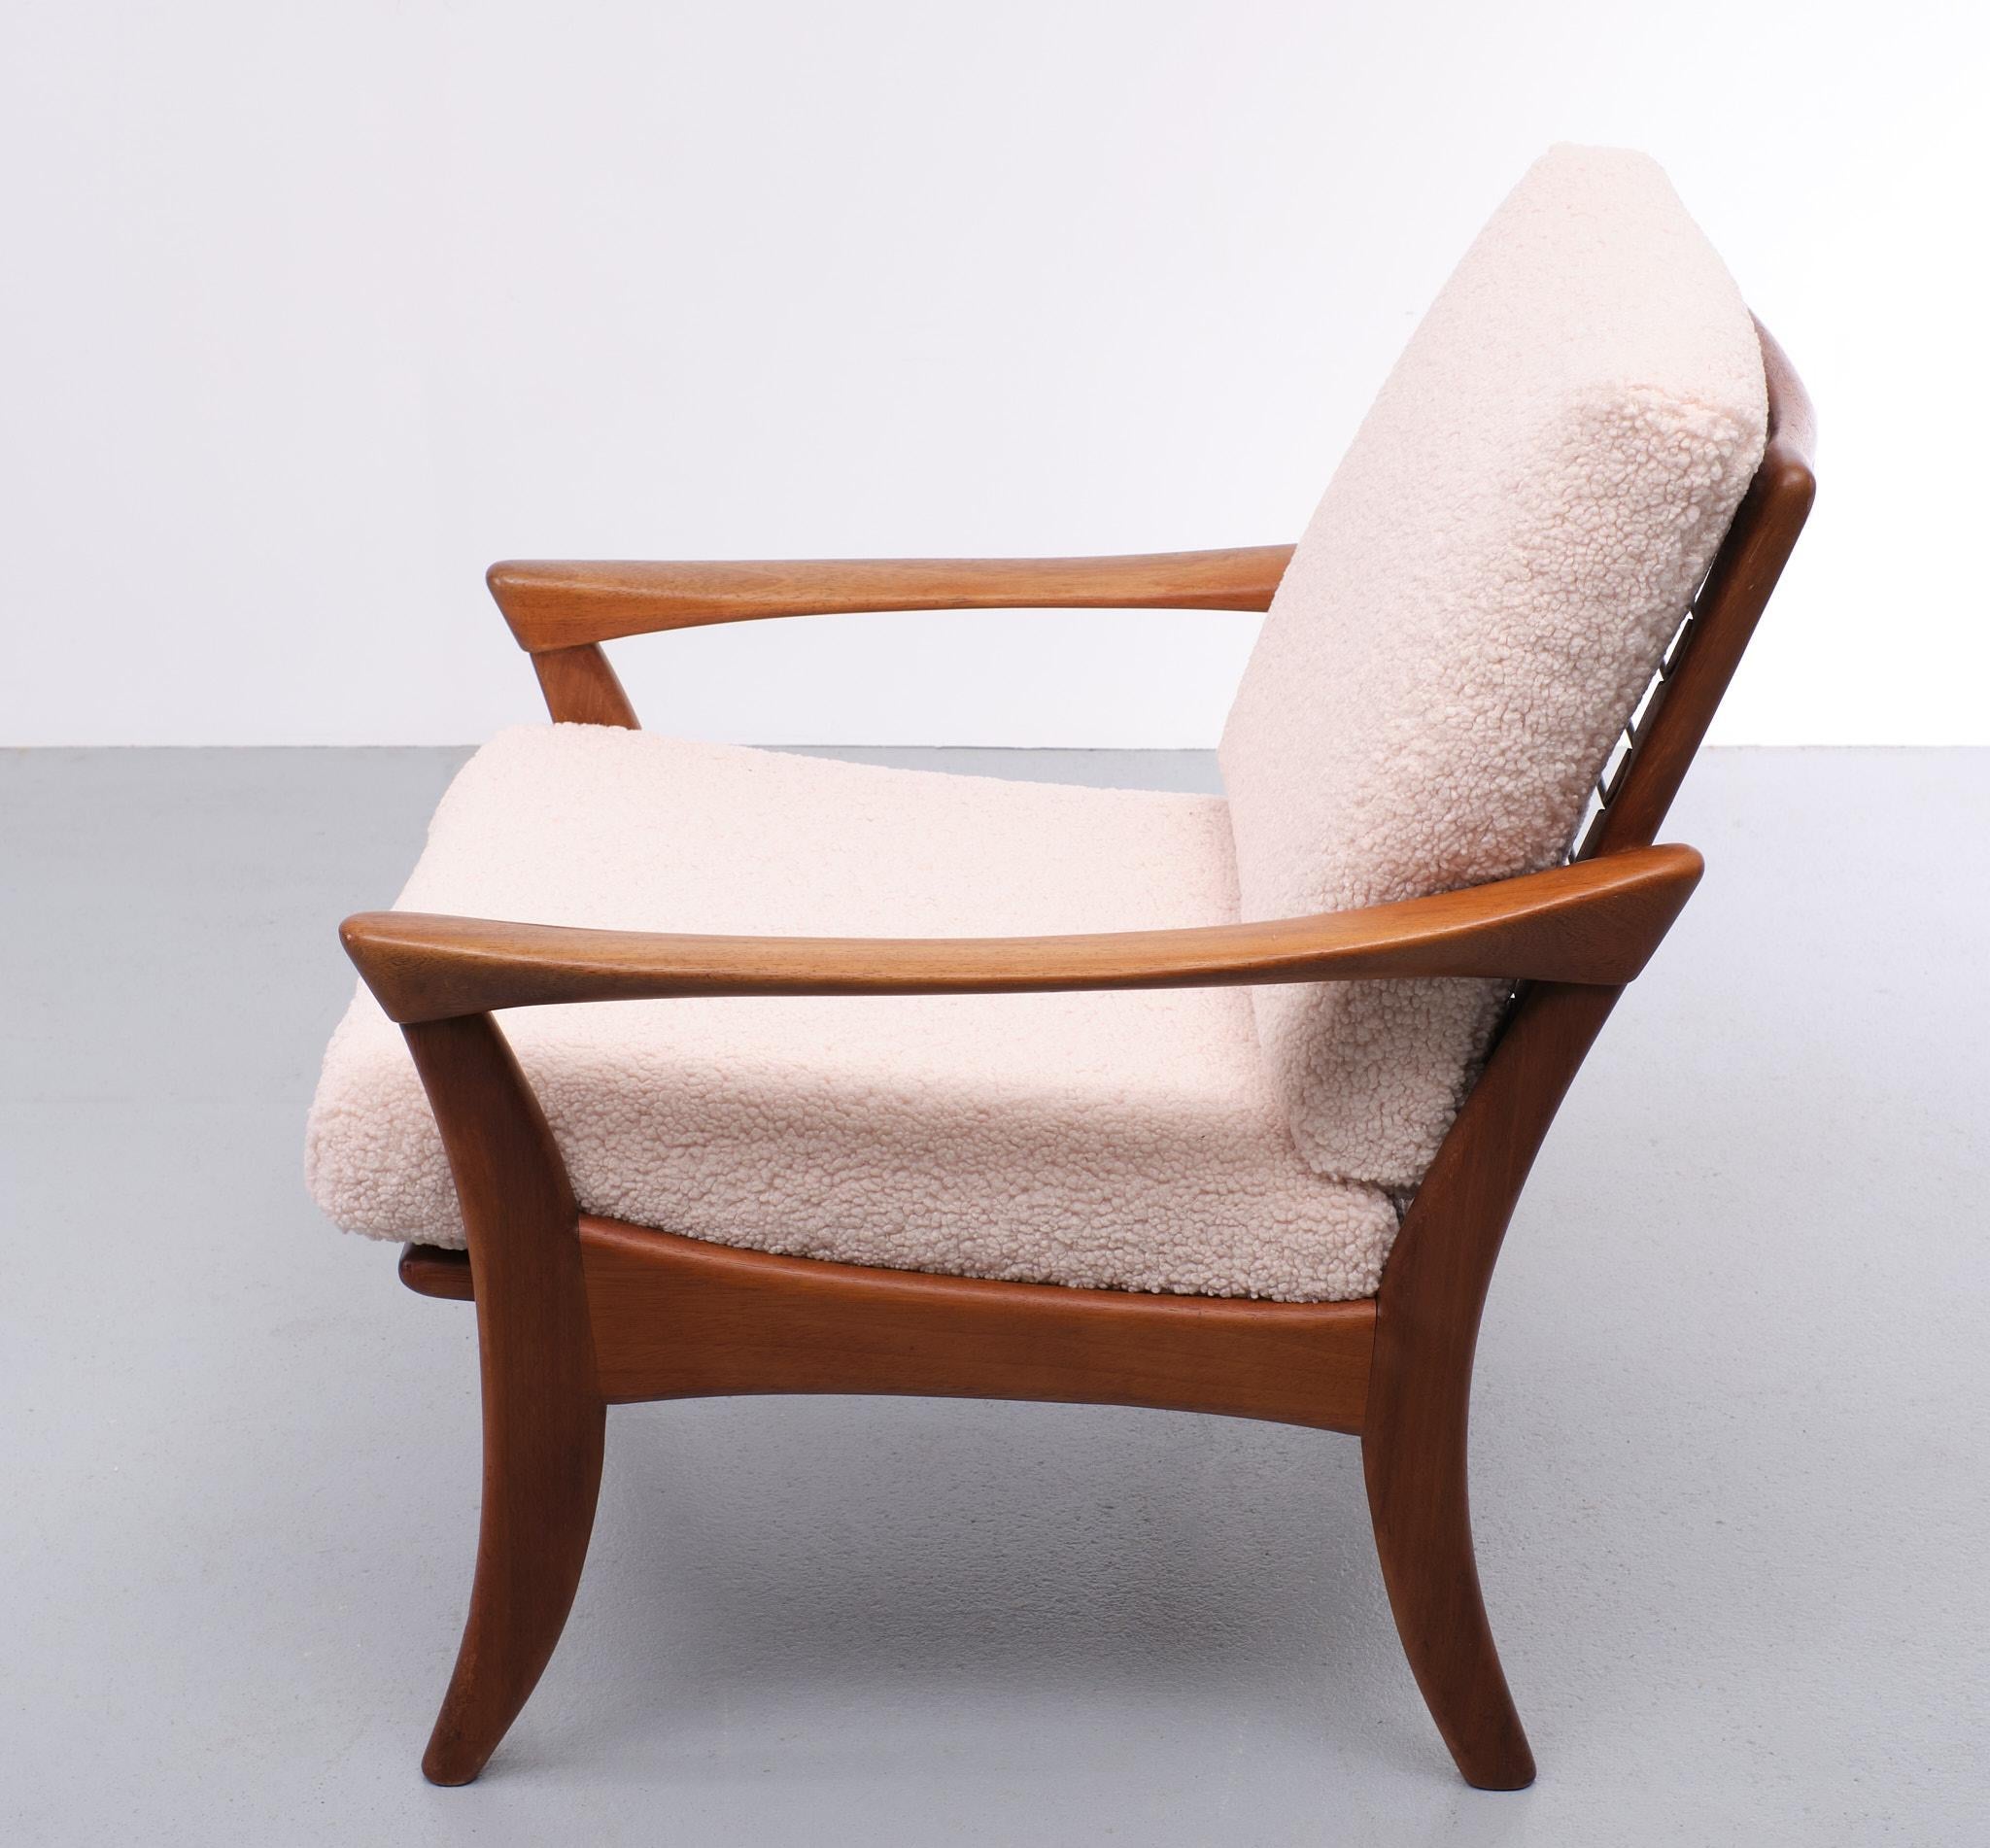 Mid-20th Century Teak Lounge Chair De Ster Gelderland 1950s Holland